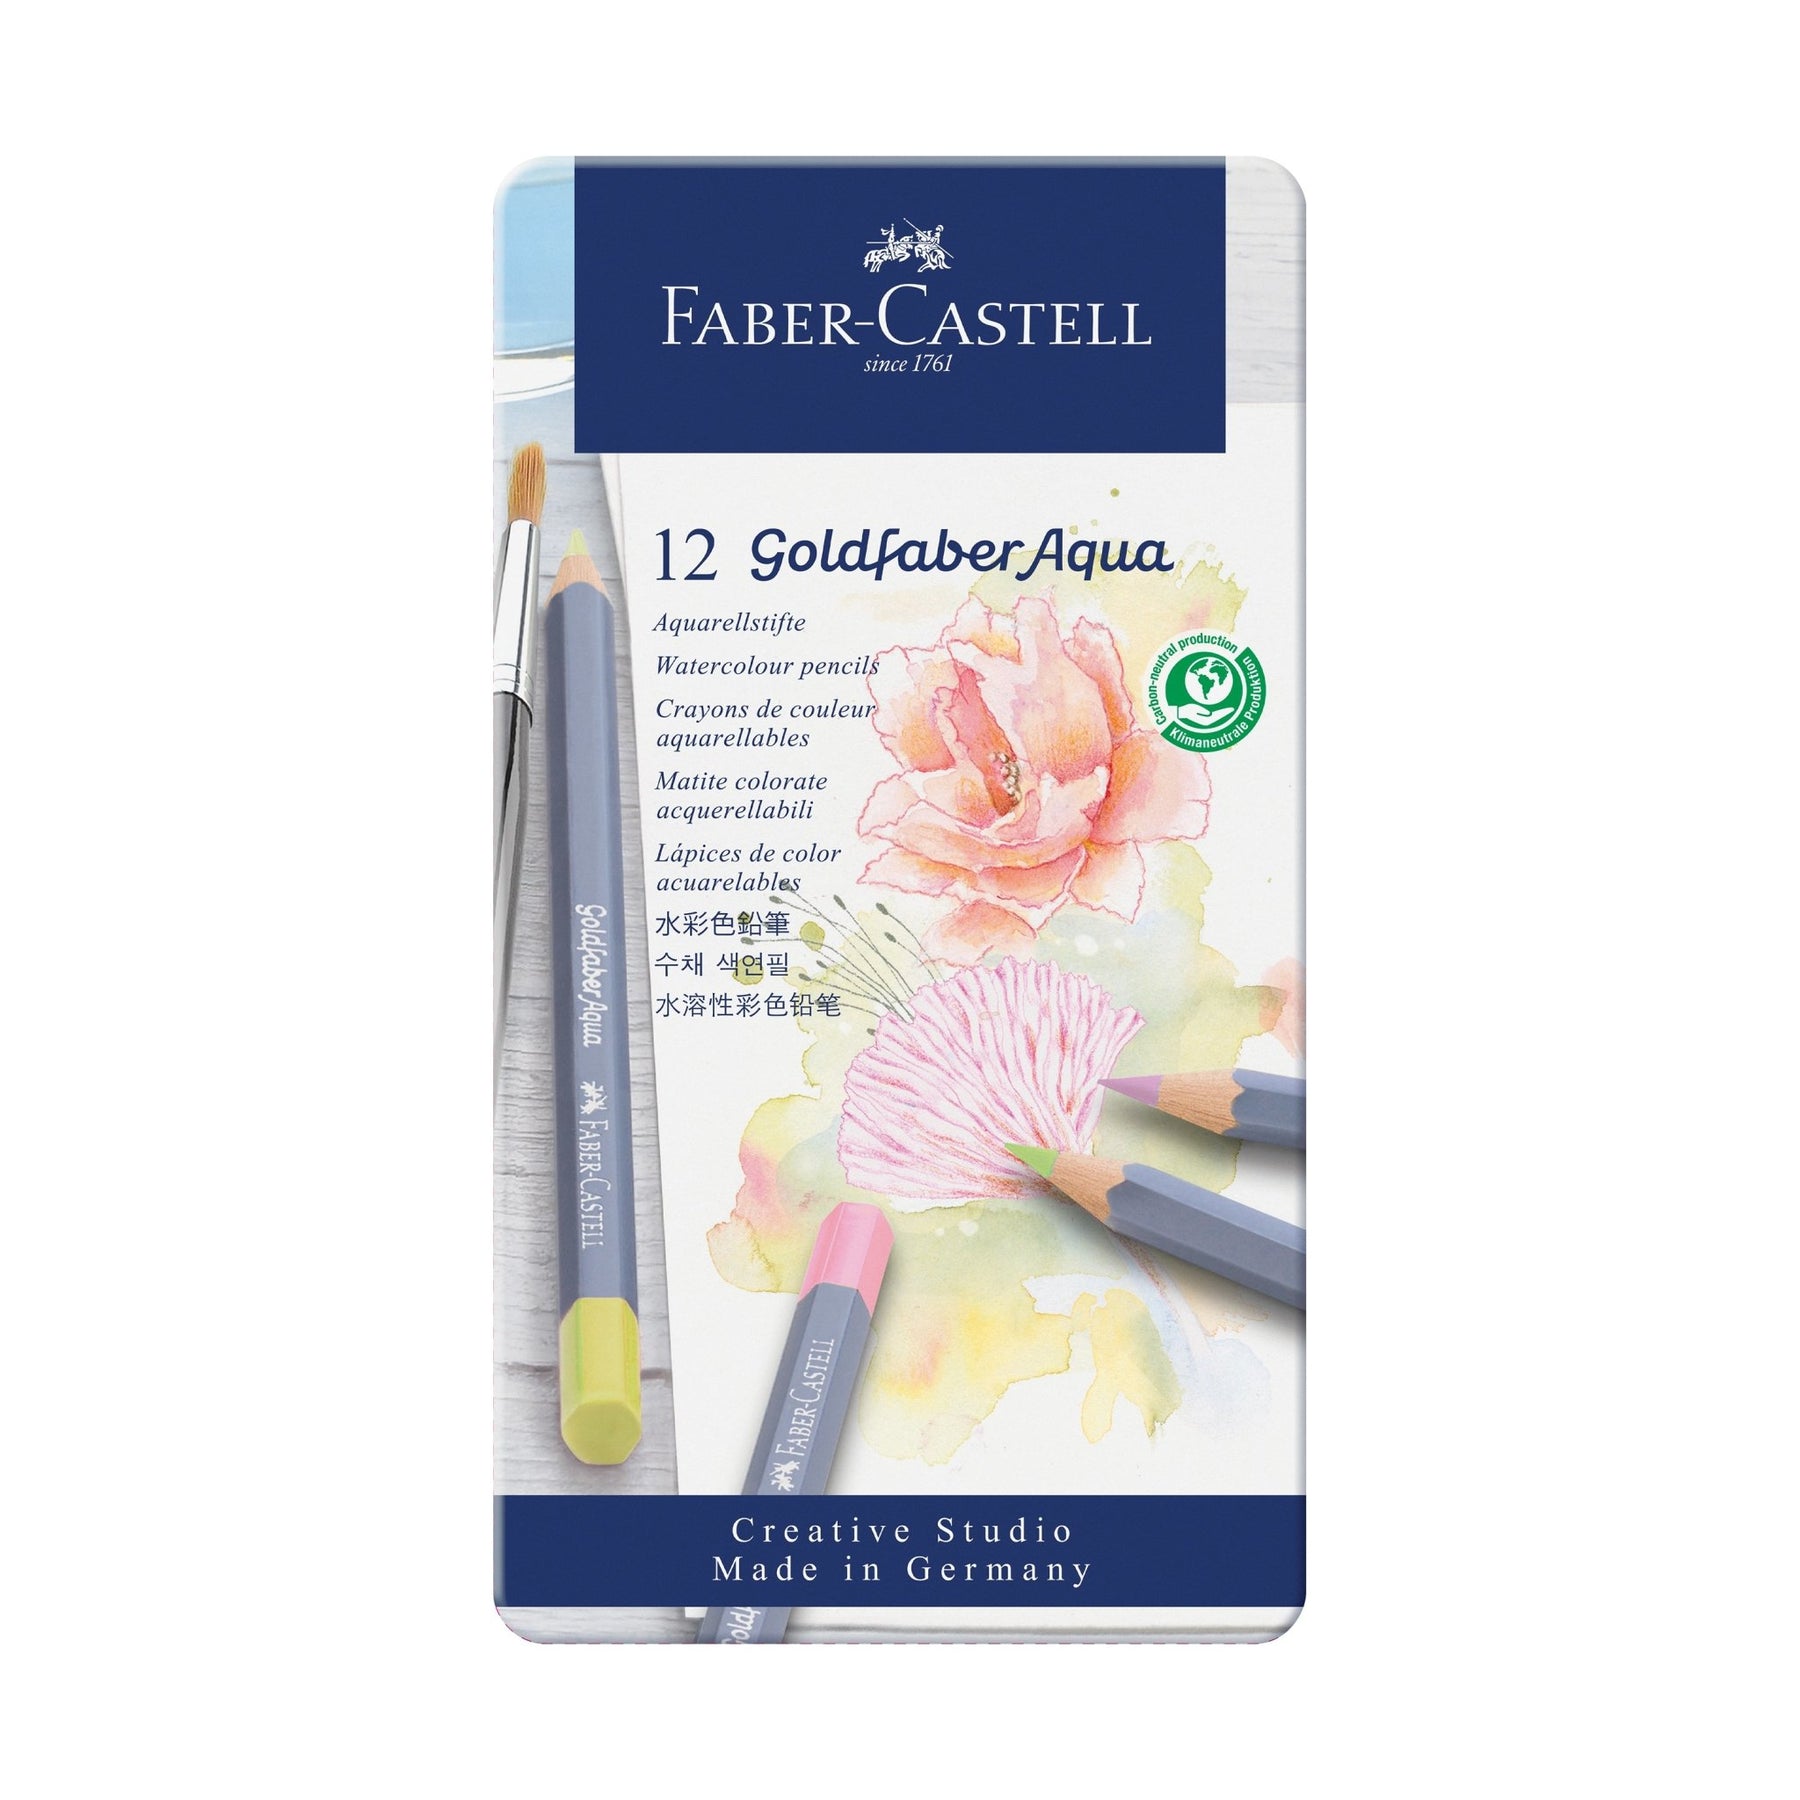 Faber-Castell Goldfaber Aqua Pencil 12 Color Set in Metal Tin - Pastel Colors - merriartist.com